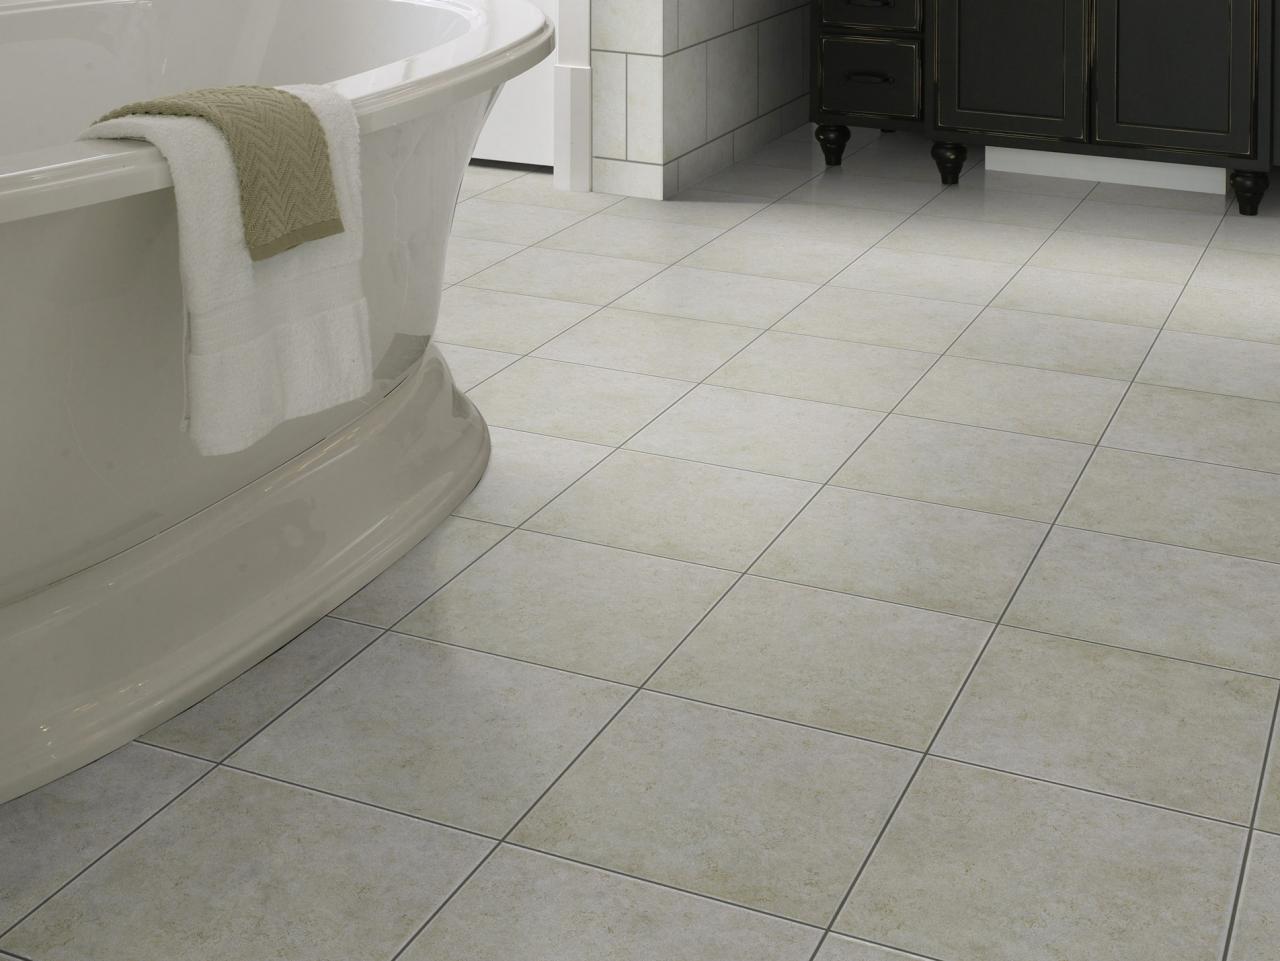 Tips for choosing ceramic tile flooring